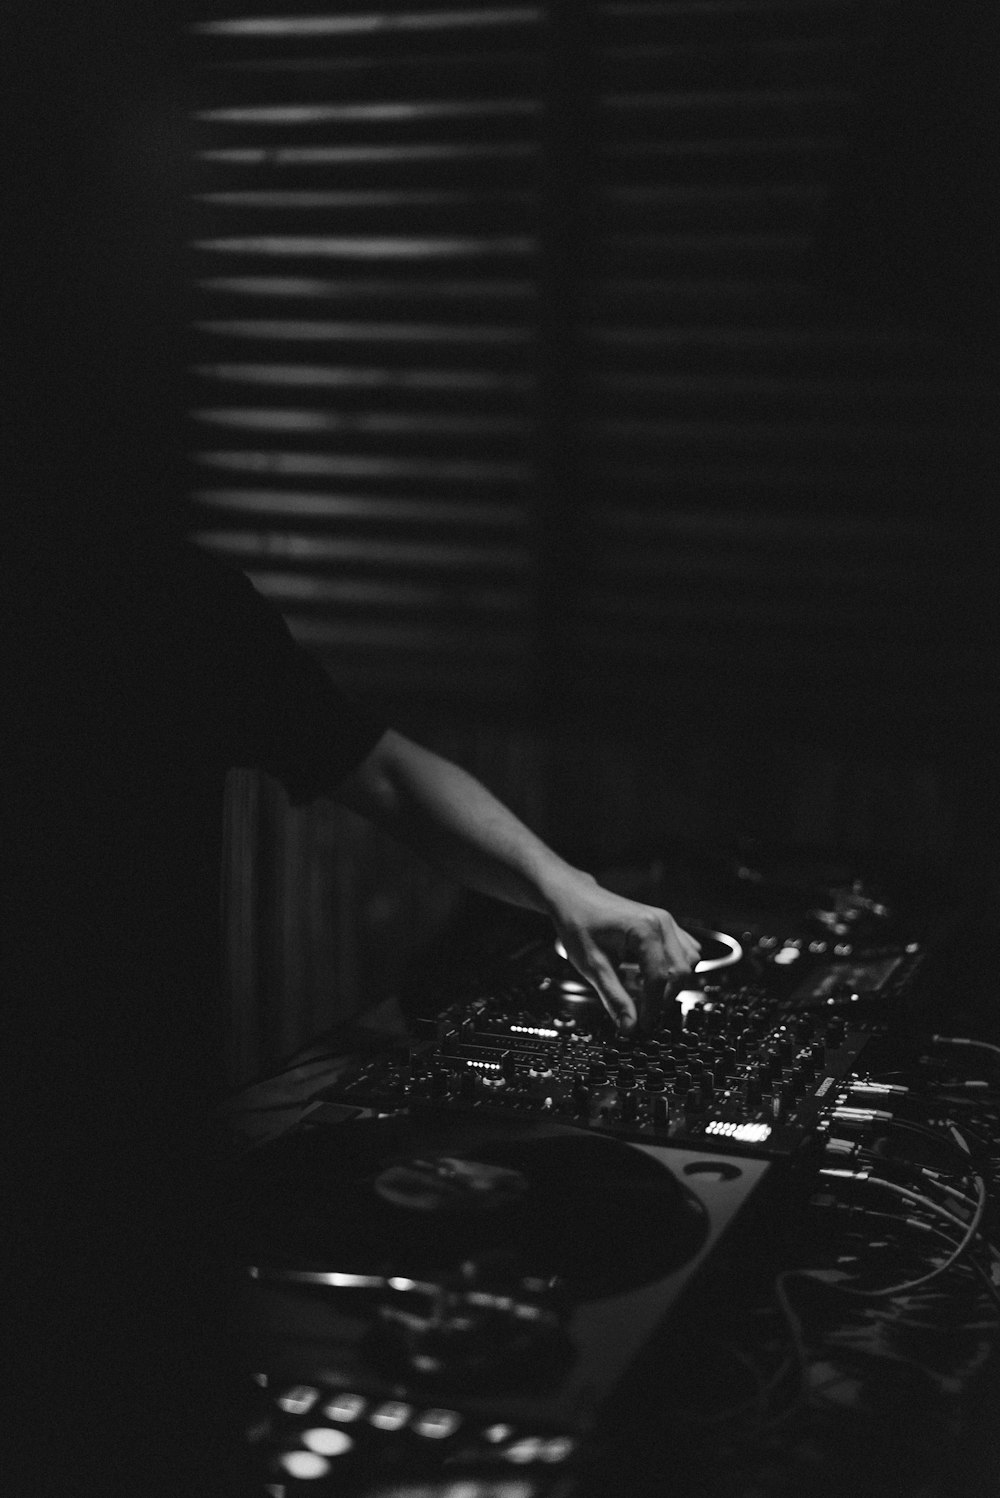 DJ 컨트롤러를 연주하는 사람의 그레이스케일 사진